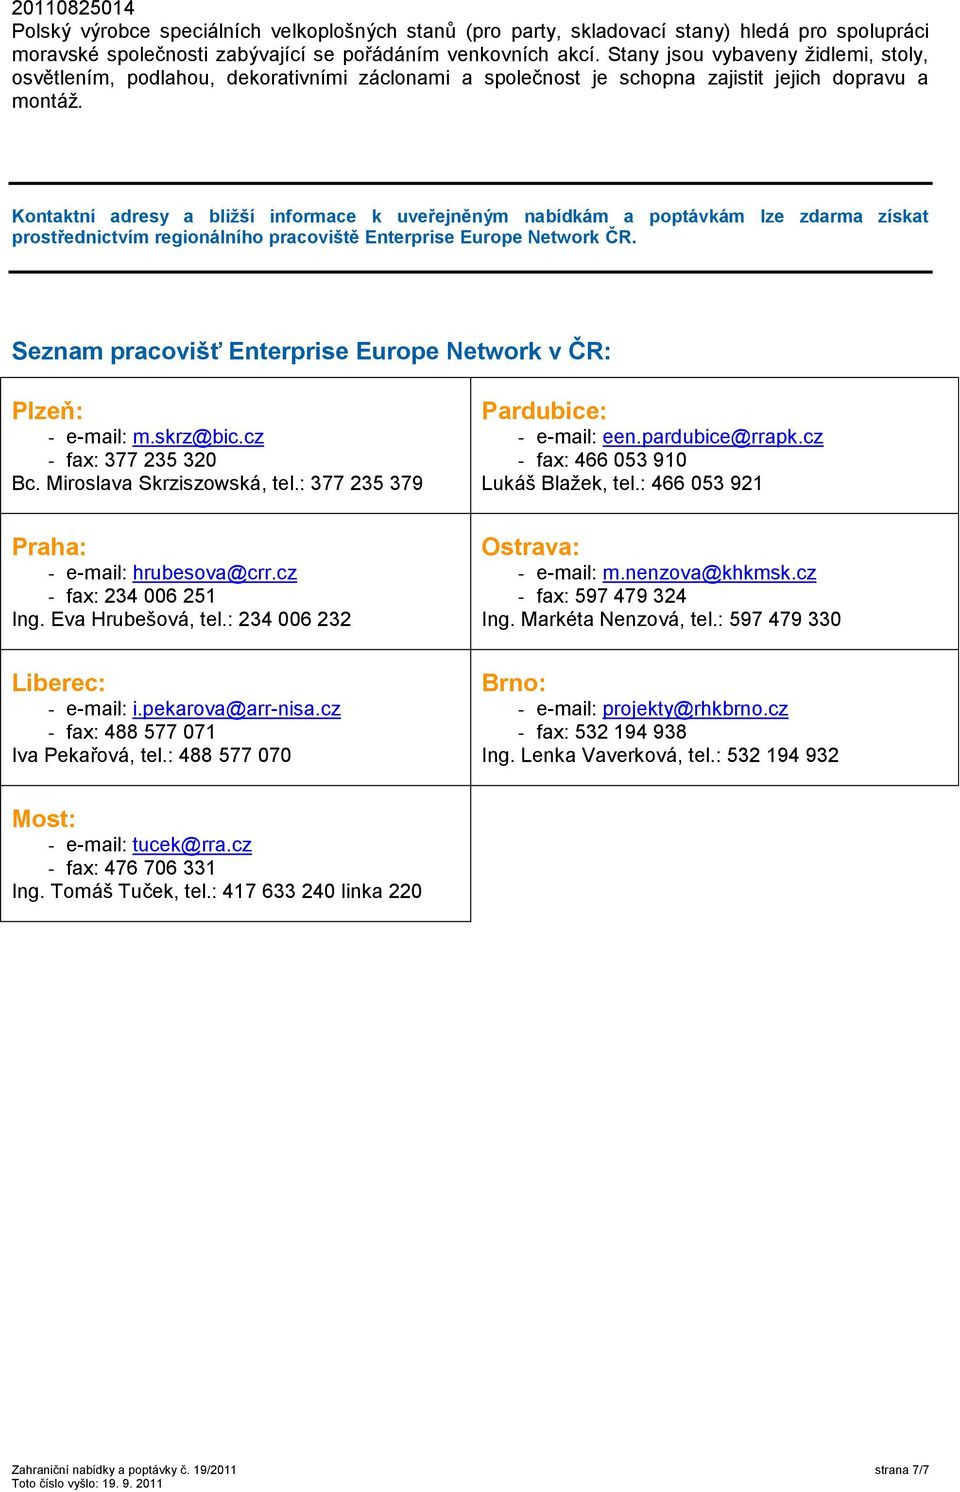 Kontaktní adresy a bližší informace k uveřejněným nabídkám a poptávkám lze zdarma získat prostřednictvím regionálního pracoviště Enterprise Europe Network ČR.